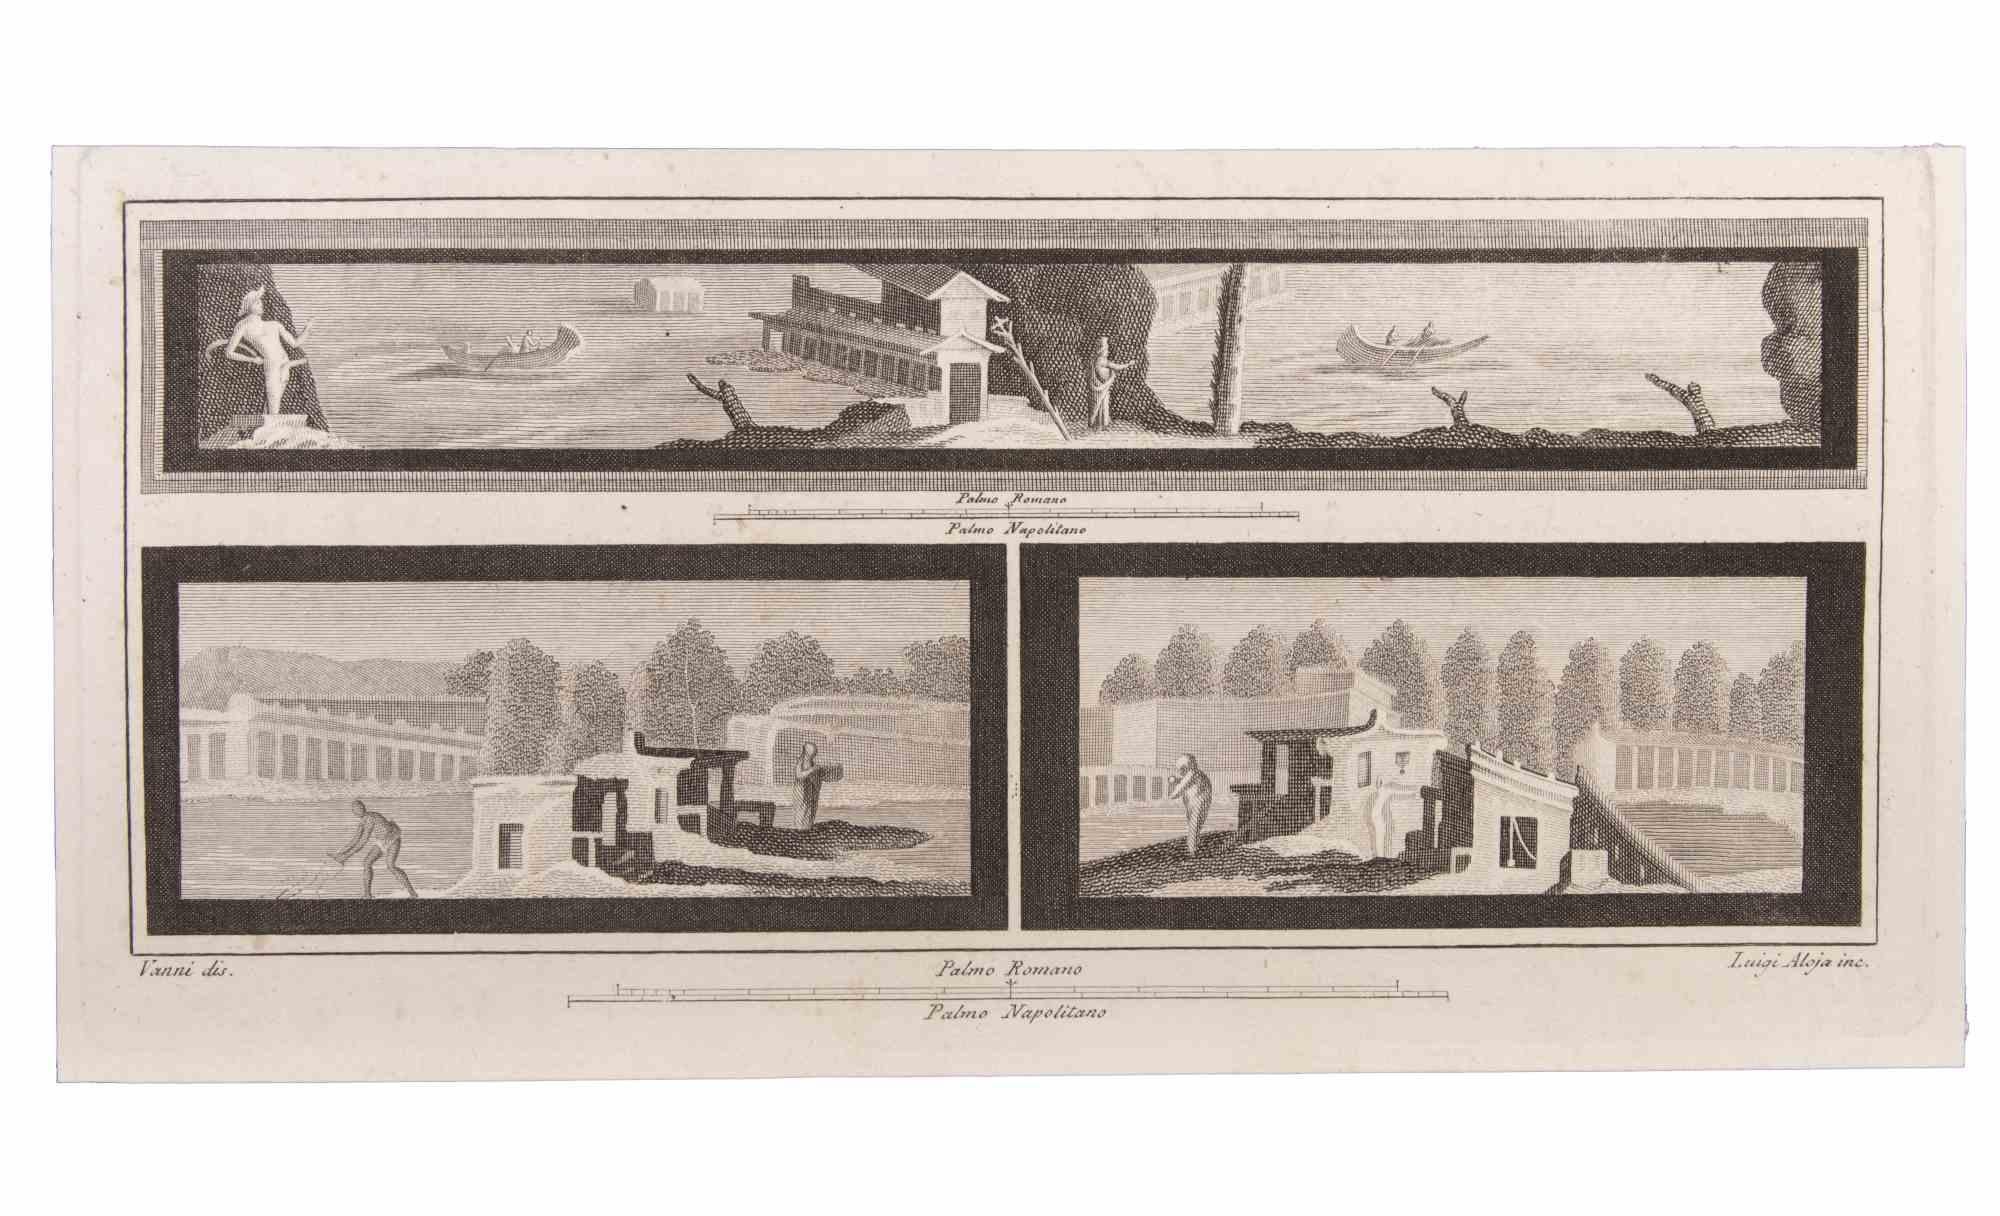 Landschaft mit Monumenten und Figuren ist eine Radierung realisiert von  Luigi Aloja (1783-1837).

Die Radierung gehört zu der Druckserie "Antiquities of Herculaneum Exposed" (Originaltitel: "Le Antichità di Ercolano Esposte"), einem achtbändigen